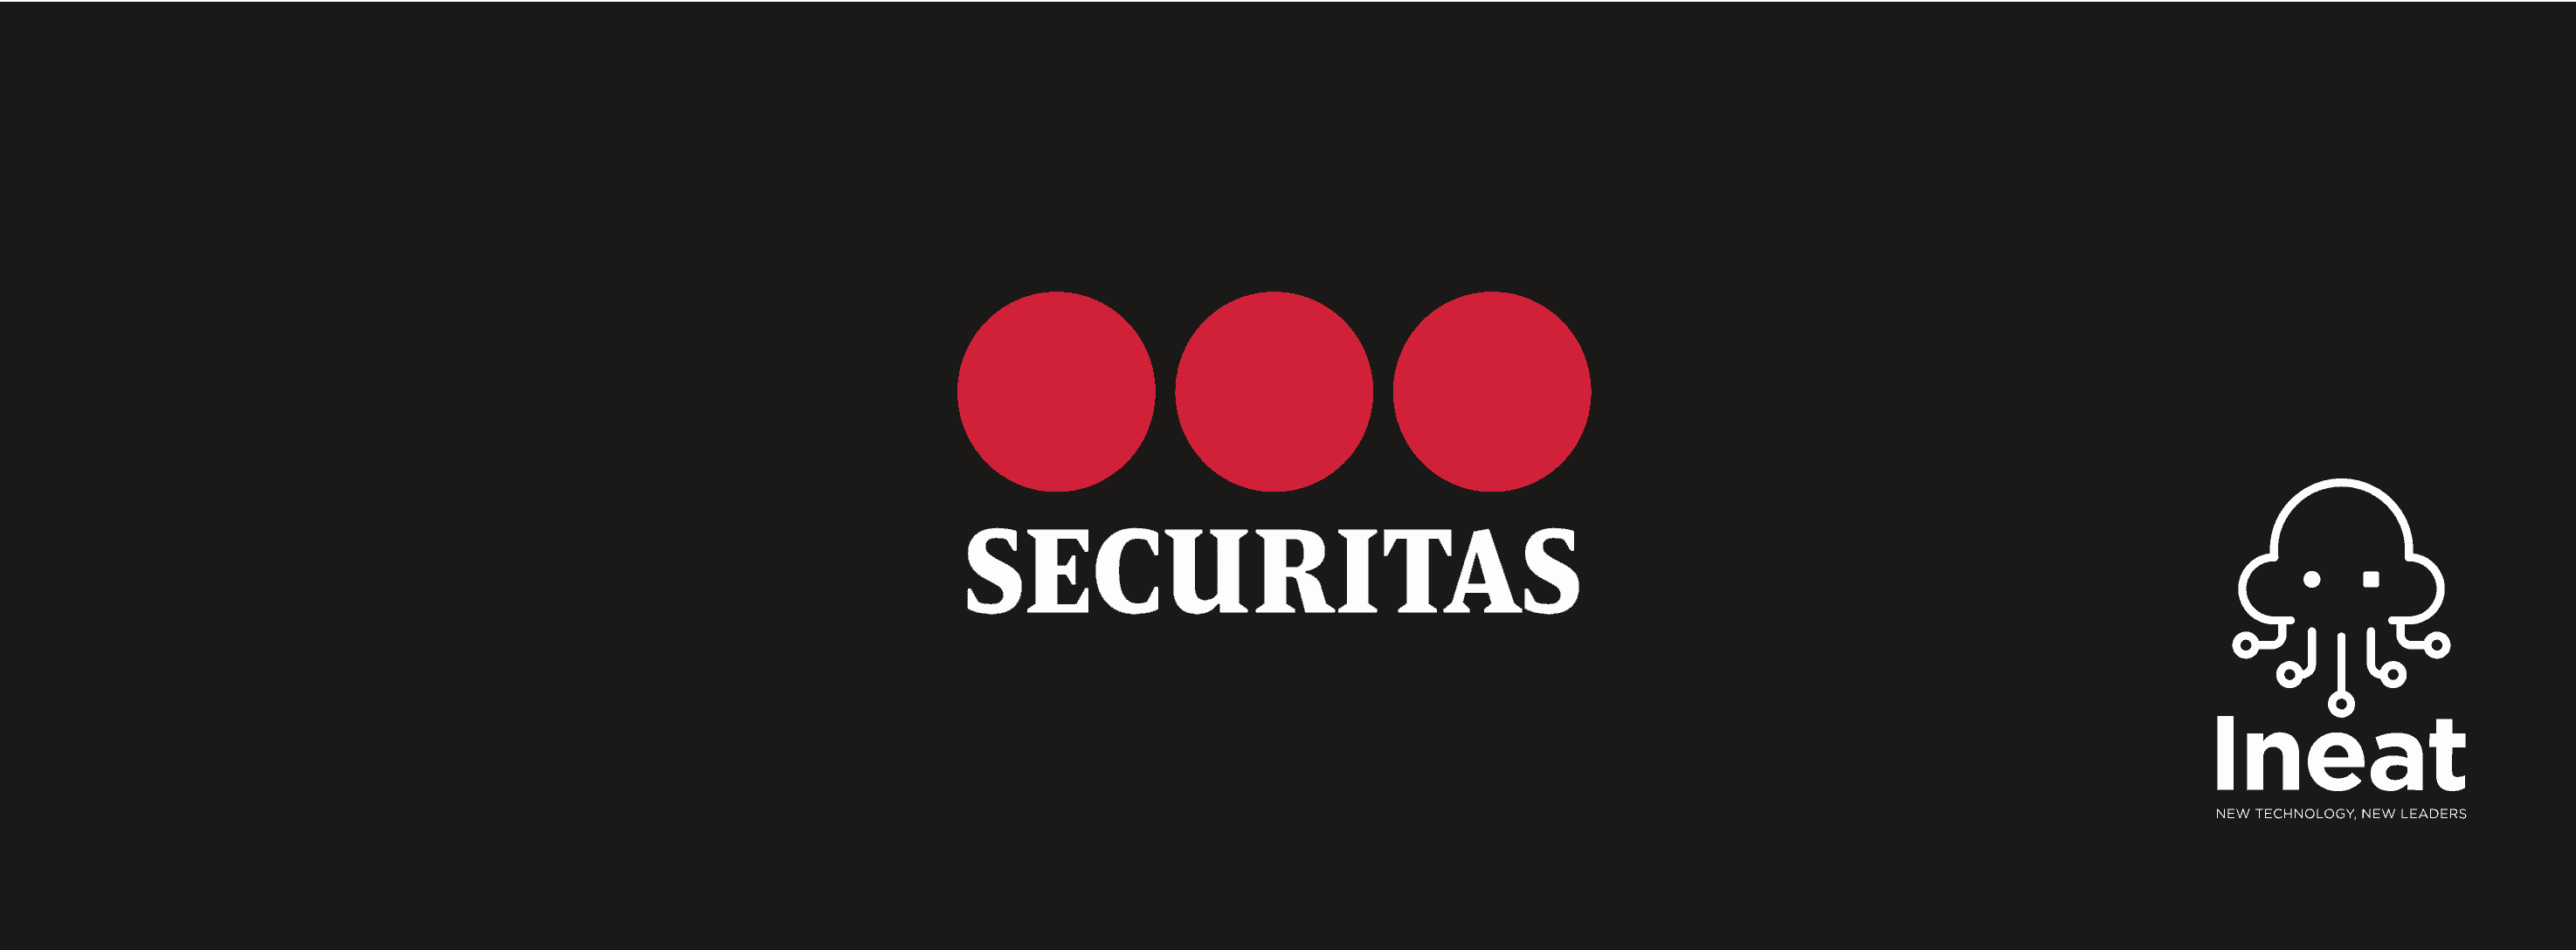 Logo Securitas référence Ineat